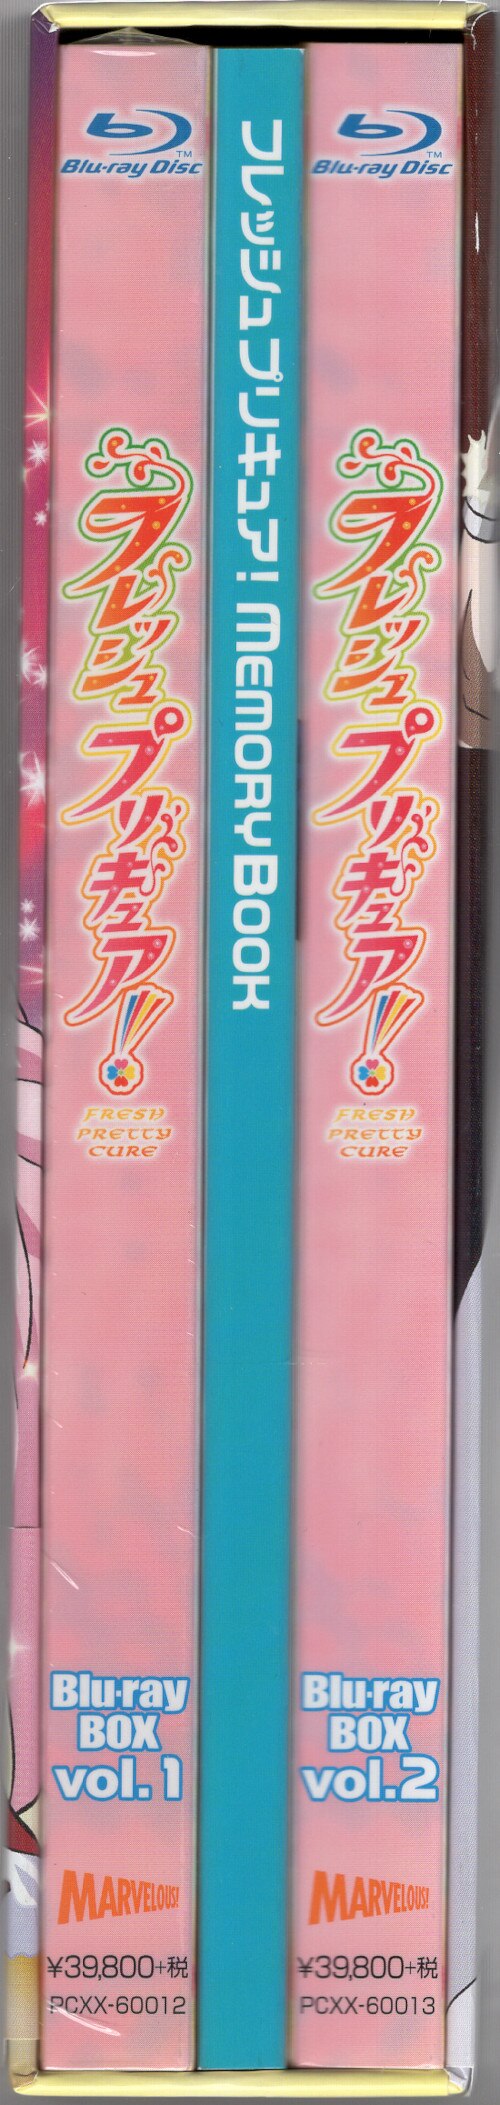 アニメBlu-ray フレッシュプリキュア! Blu-ray BOX 全2巻セット 